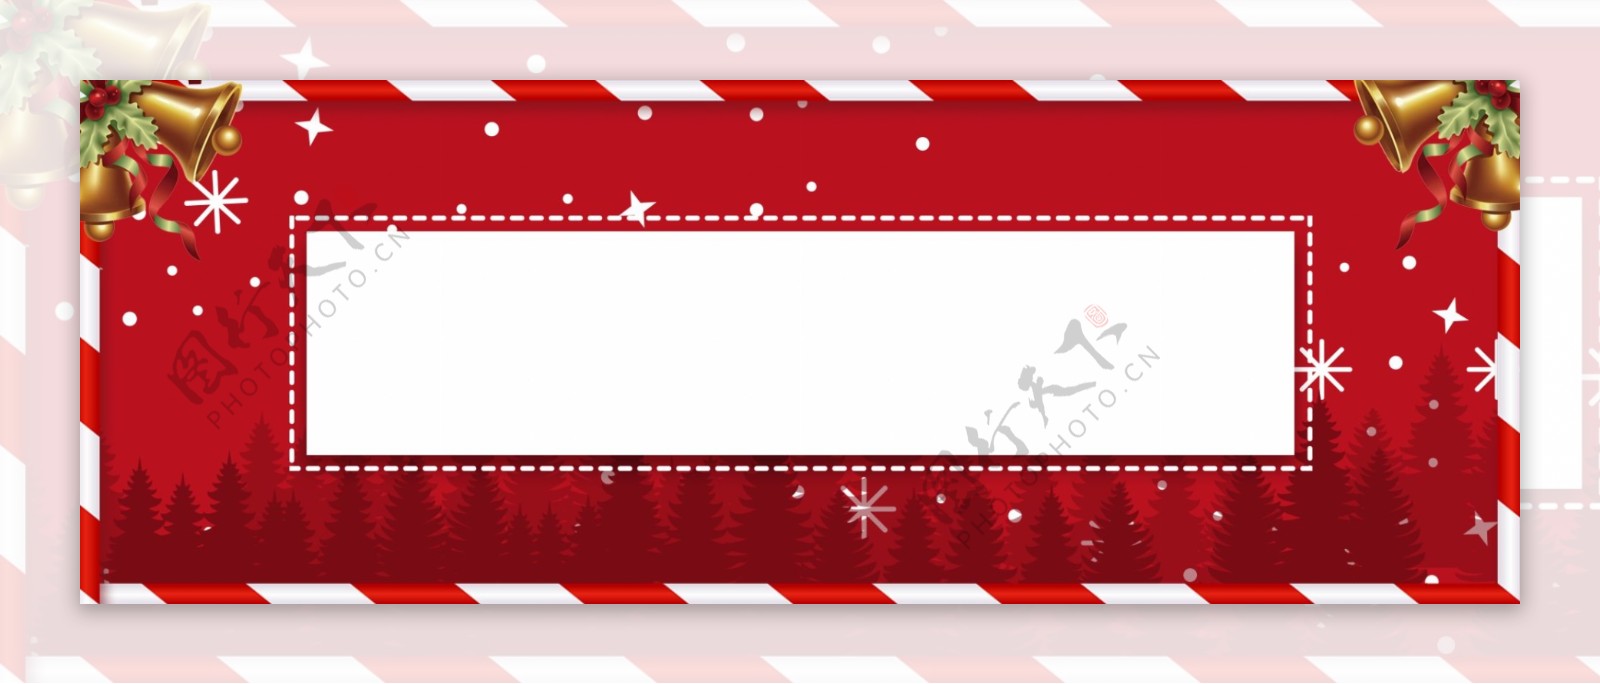 创意红色喜庆圣诞节banner背景